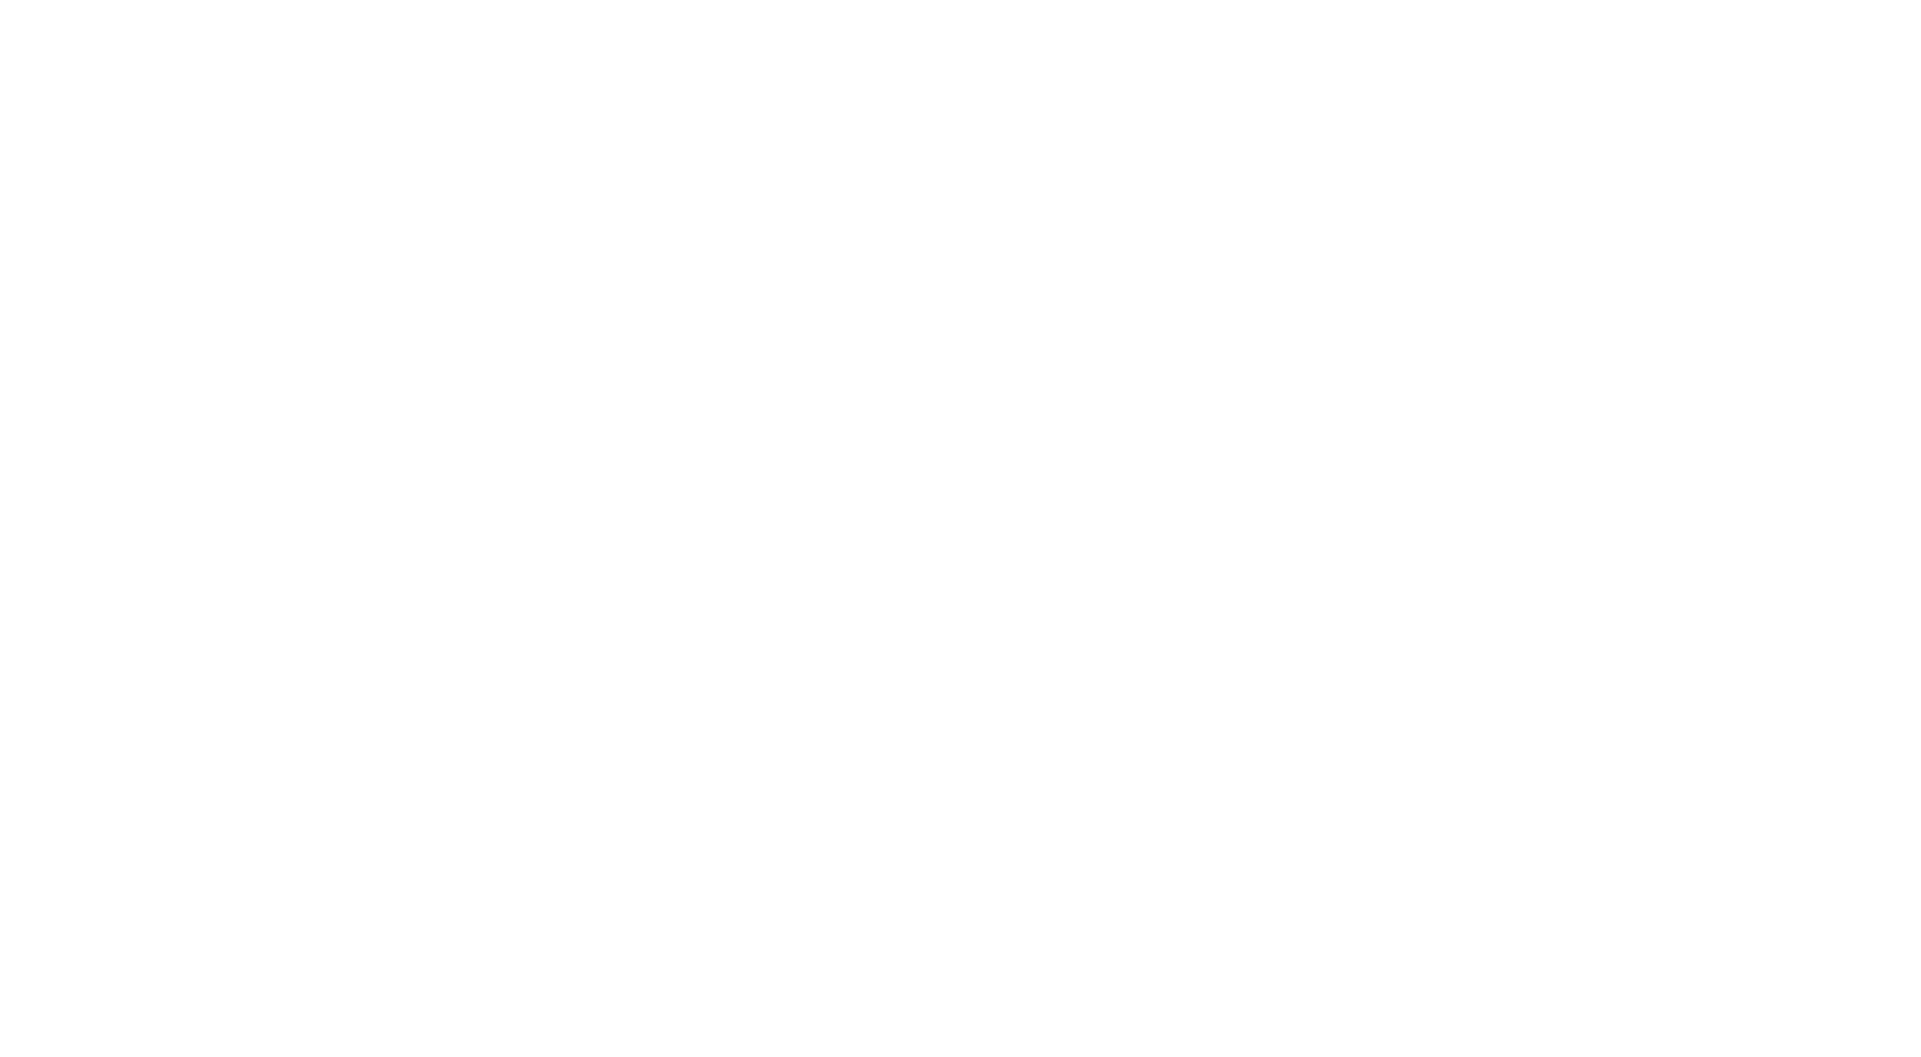 Secure EFT